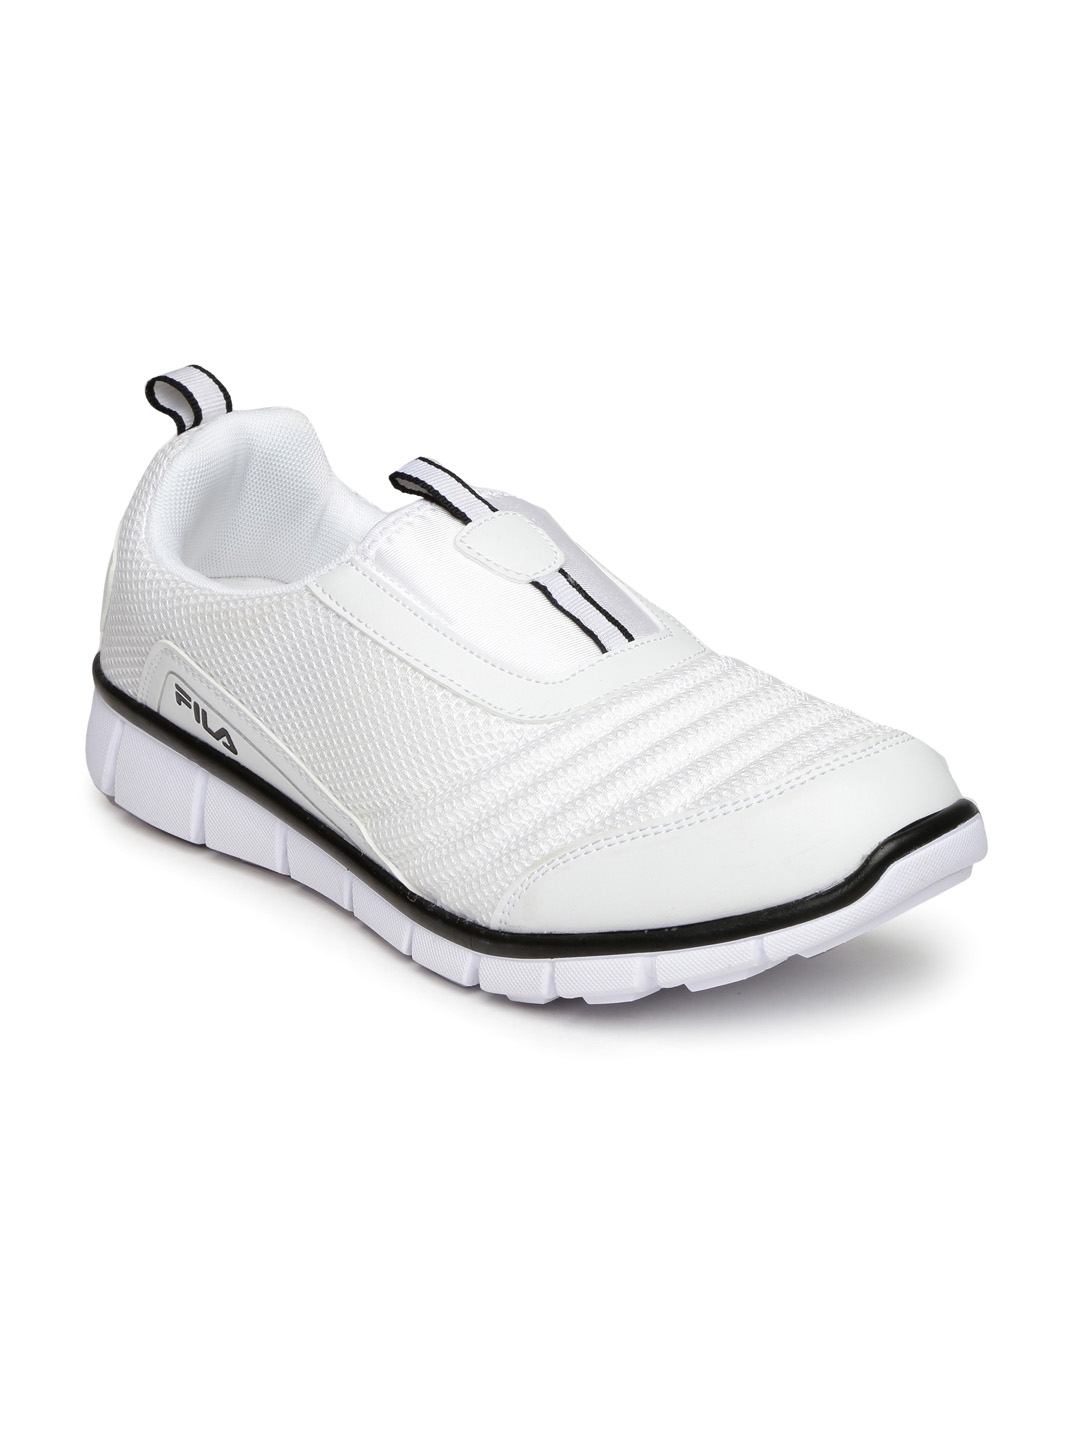 FILA Men White Smash II Running Shoes - Sports Shoes Men 1026573 Myntra